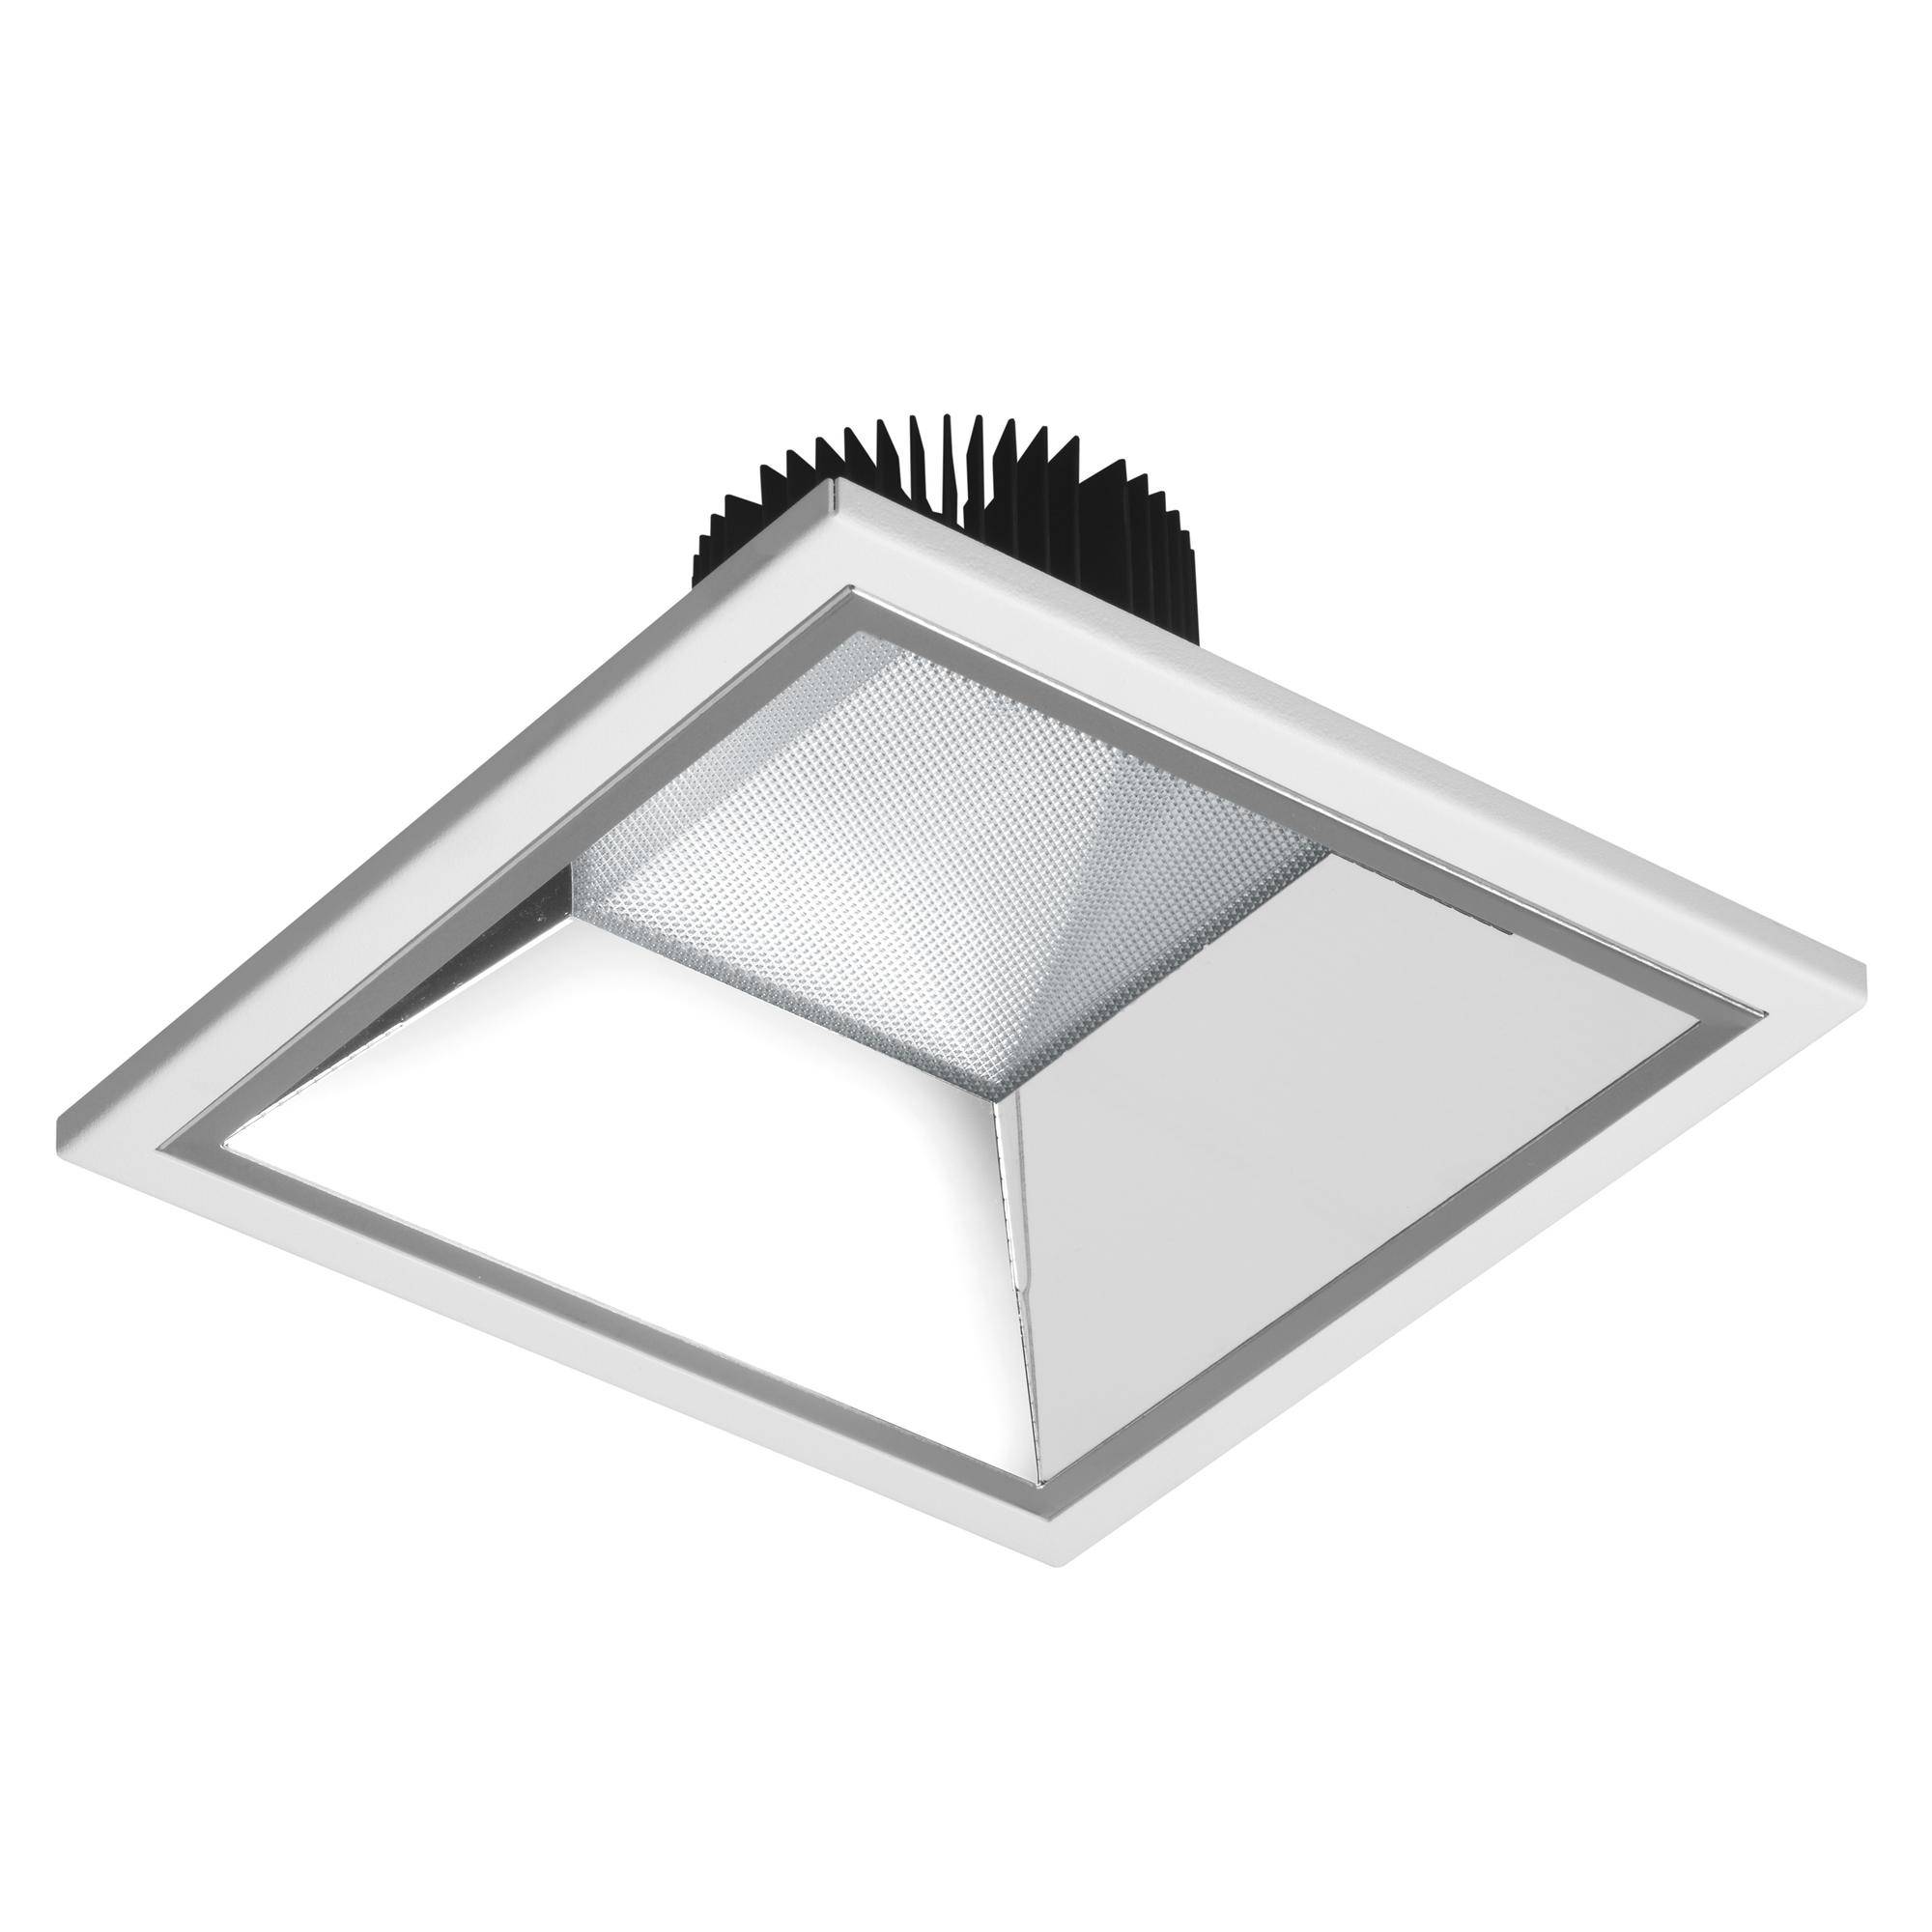 Как выбирать освещение для комнаты с натяжным потолком - установить светильники или люстру?